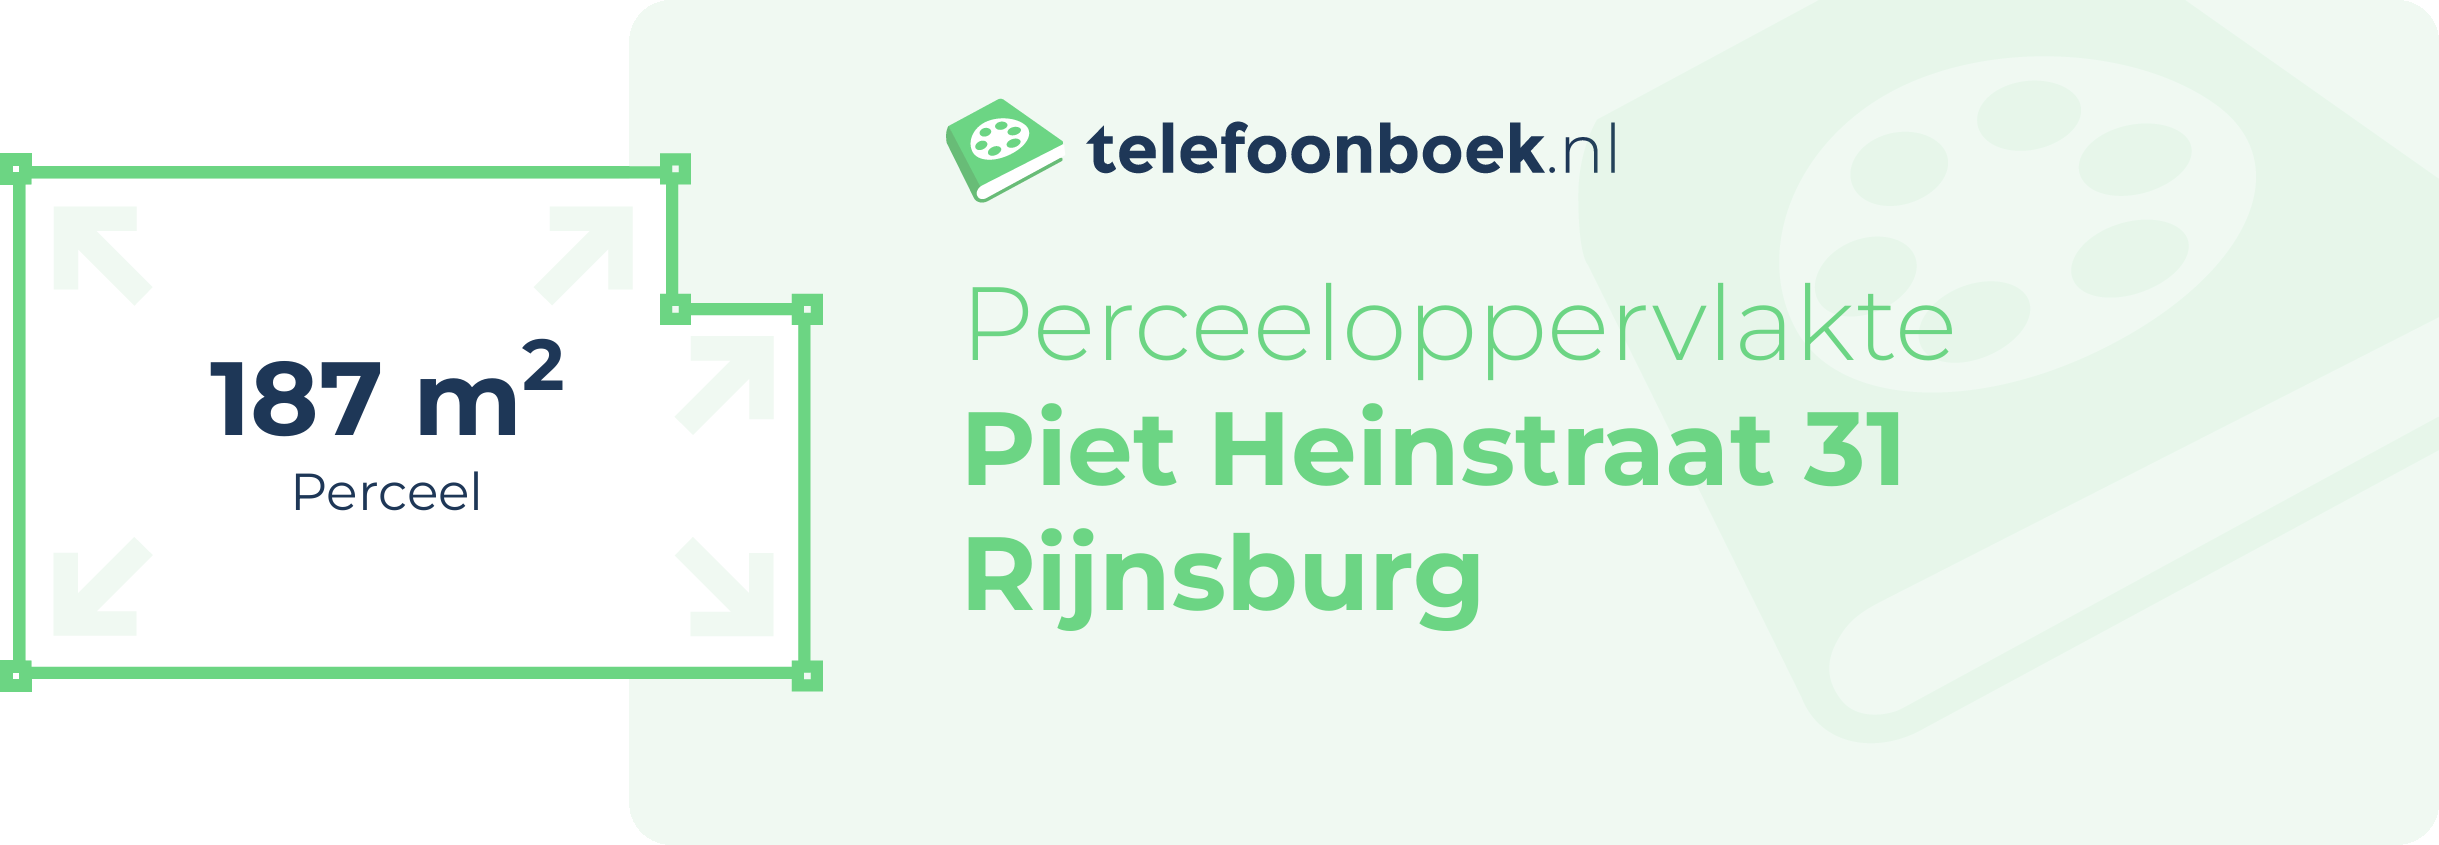 Perceeloppervlakte Piet Heinstraat 31 Rijnsburg